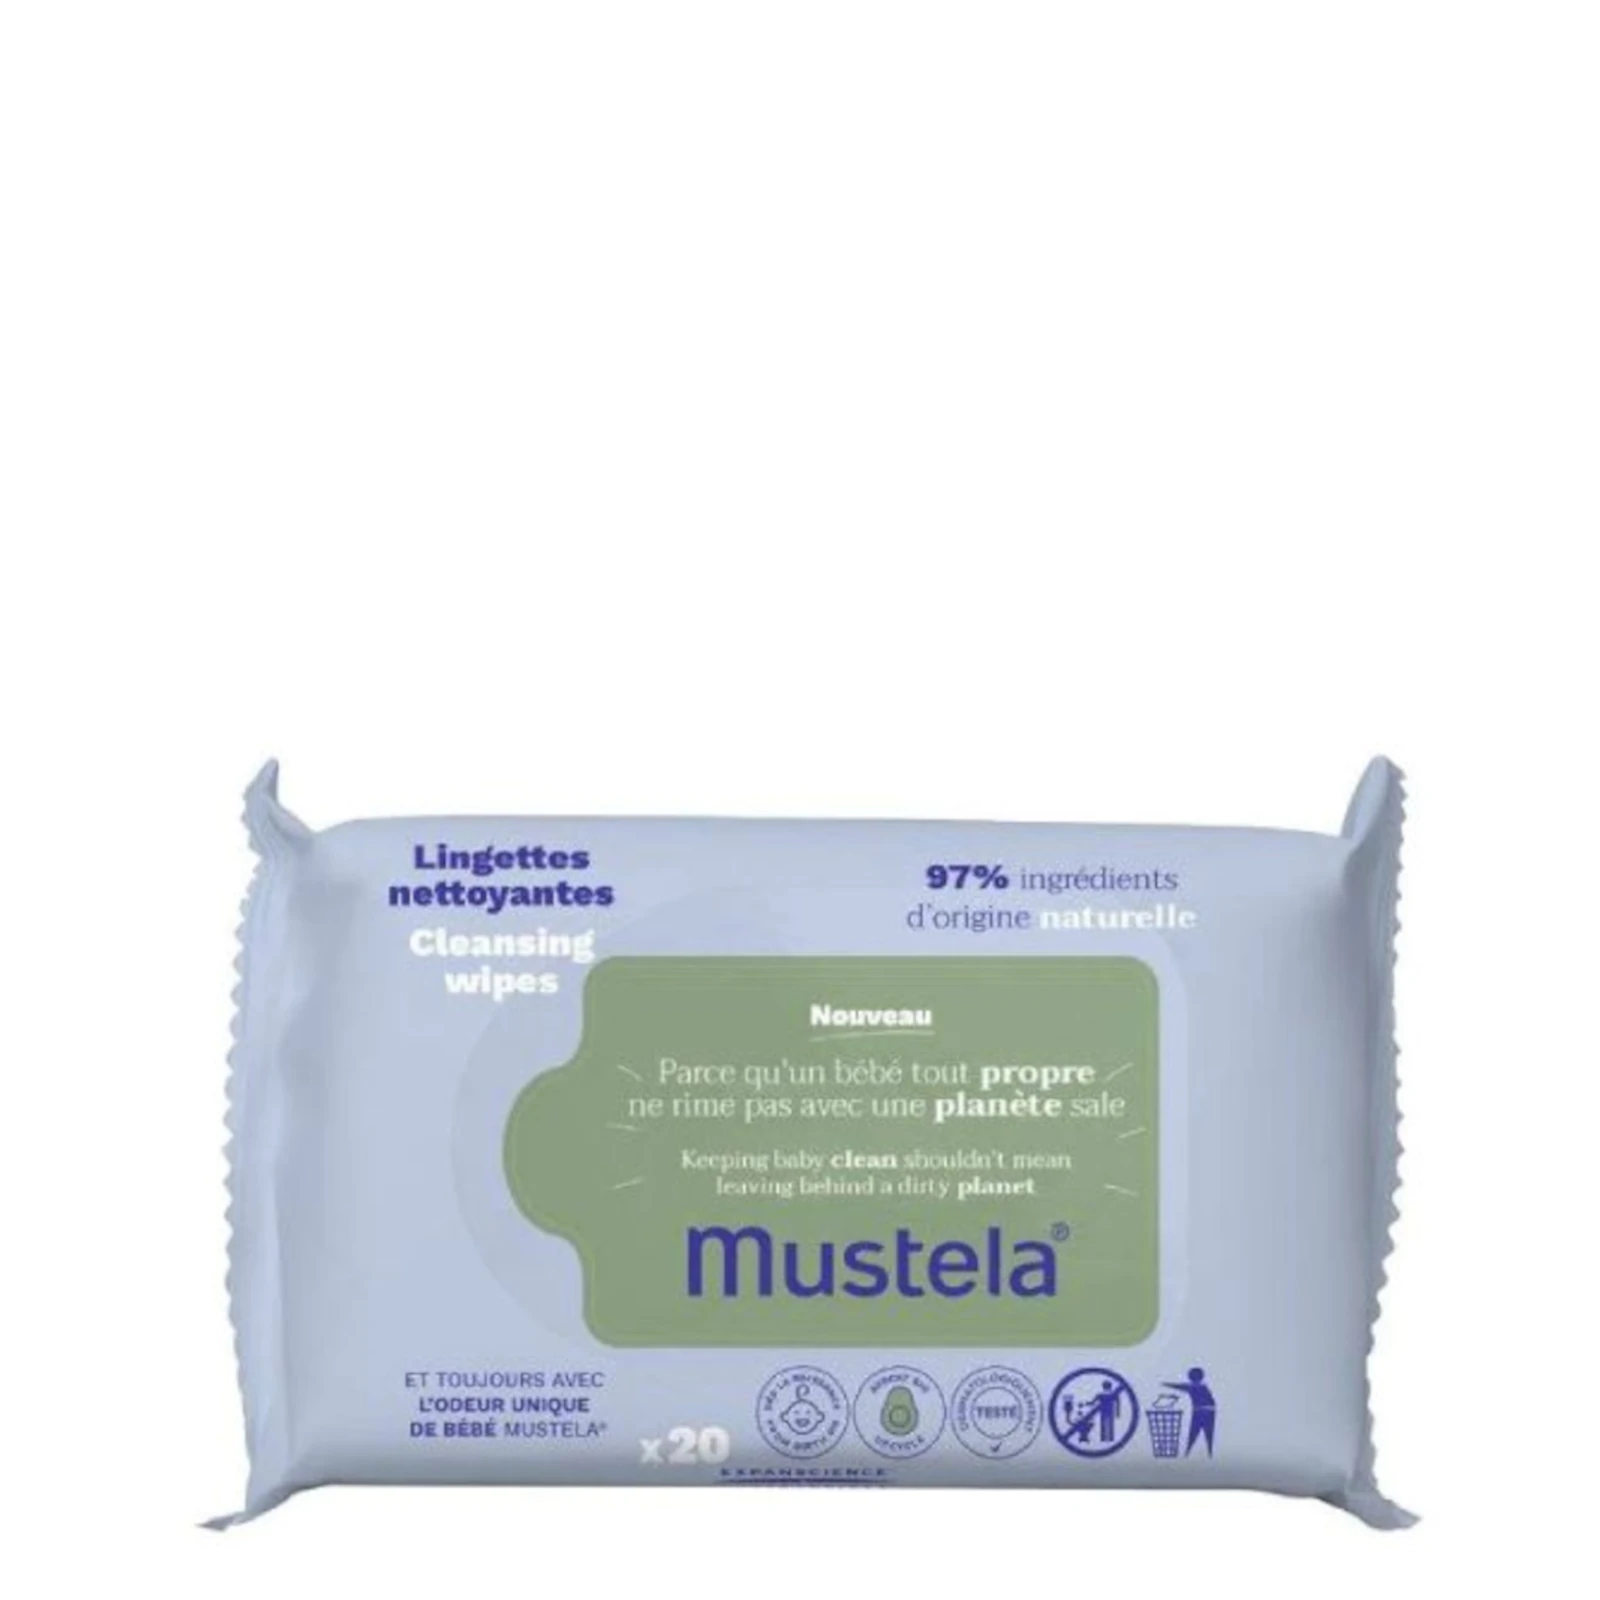 Mustela bio lingettes nettoyantes bio pour bébés 20 unités - Lyskin